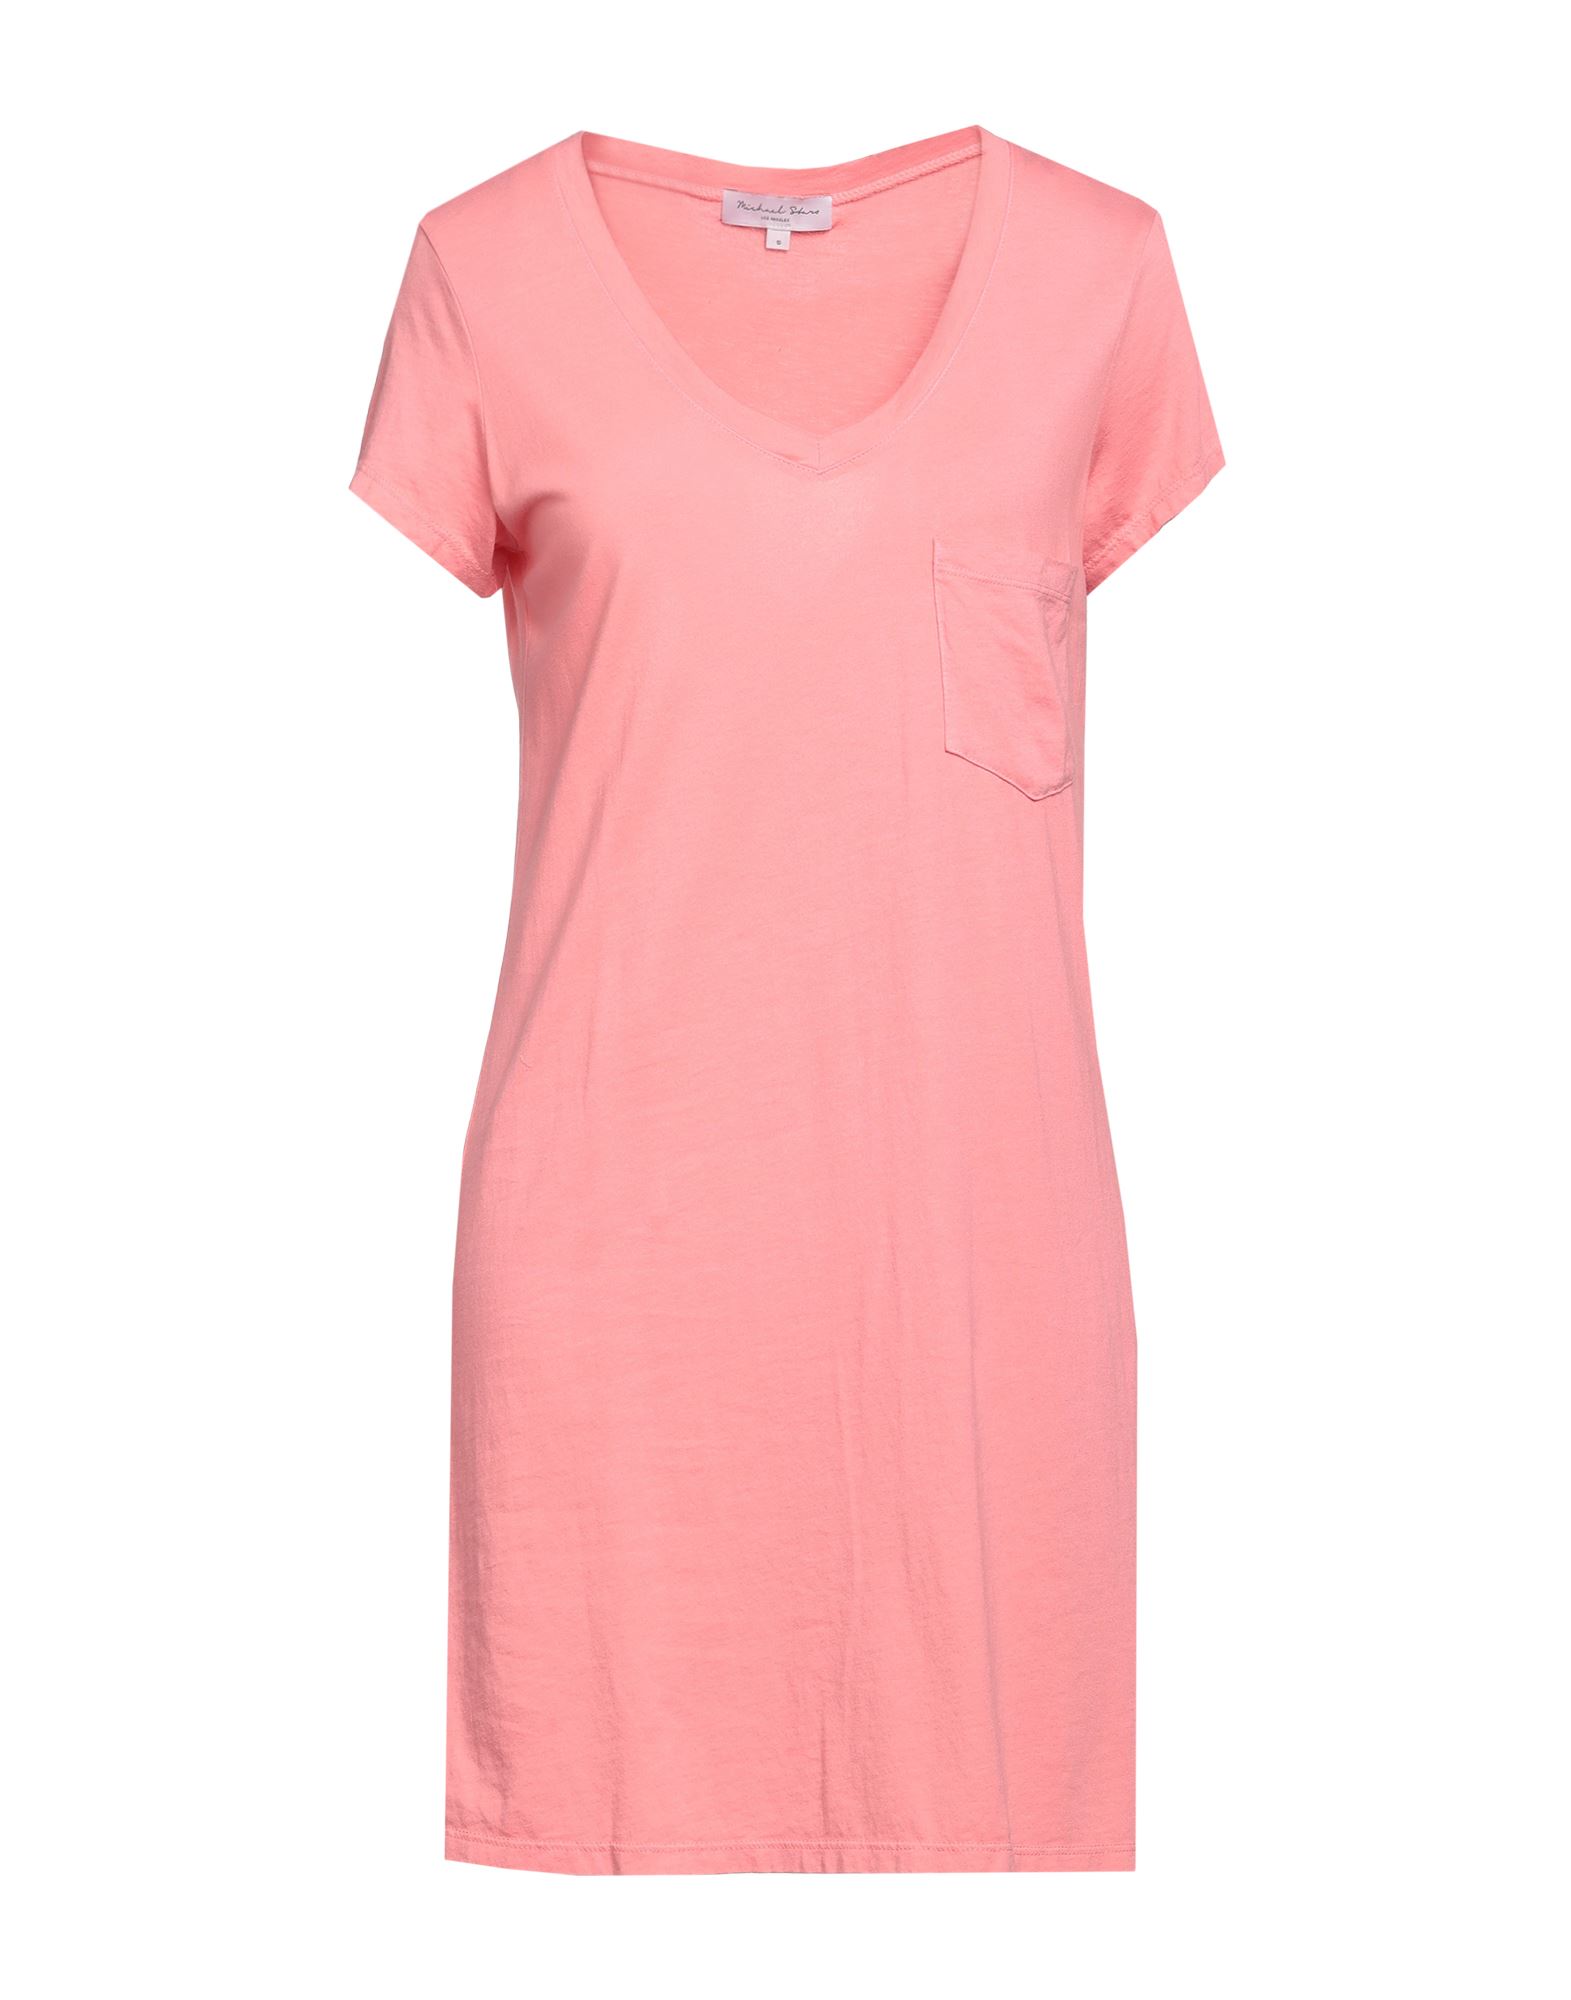 Shop Michael Stars Woman Mini Dress Salmon Pink Size L Cotton, Modal